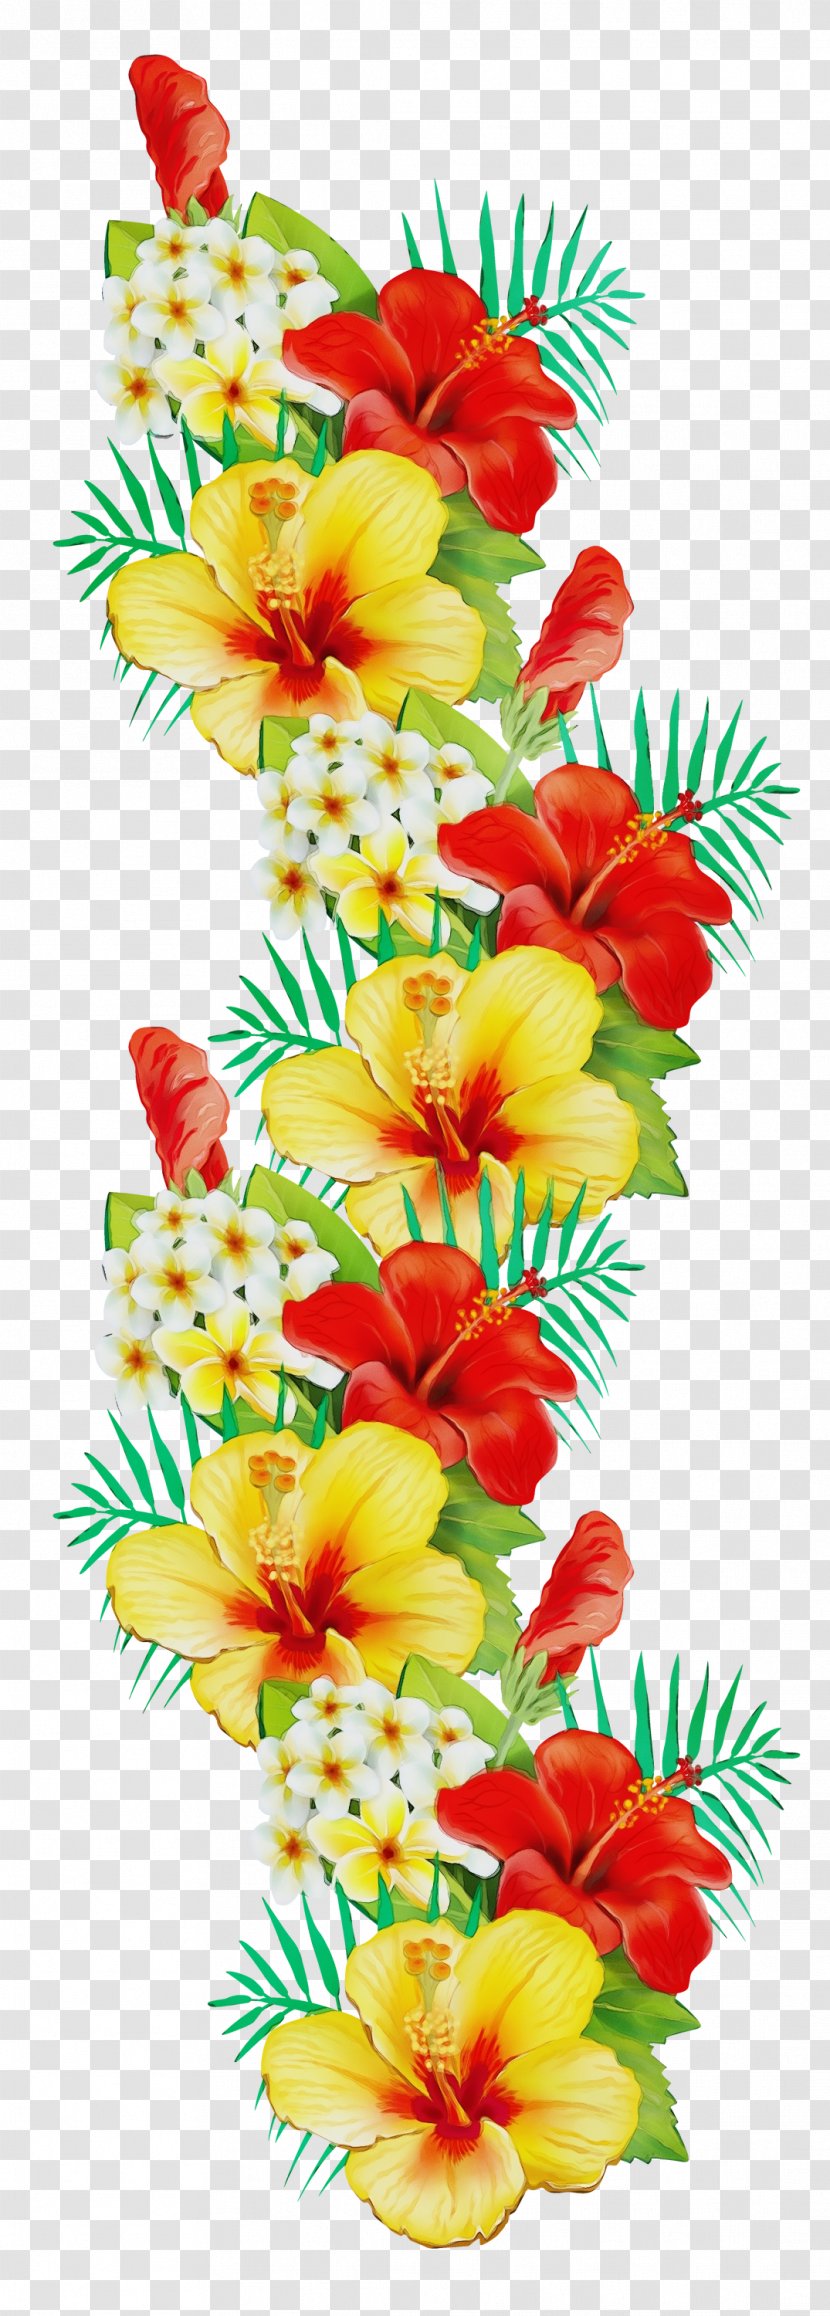 Cut Flowers Flower Bouquet Floral Design Petal - Red Transparent PNG